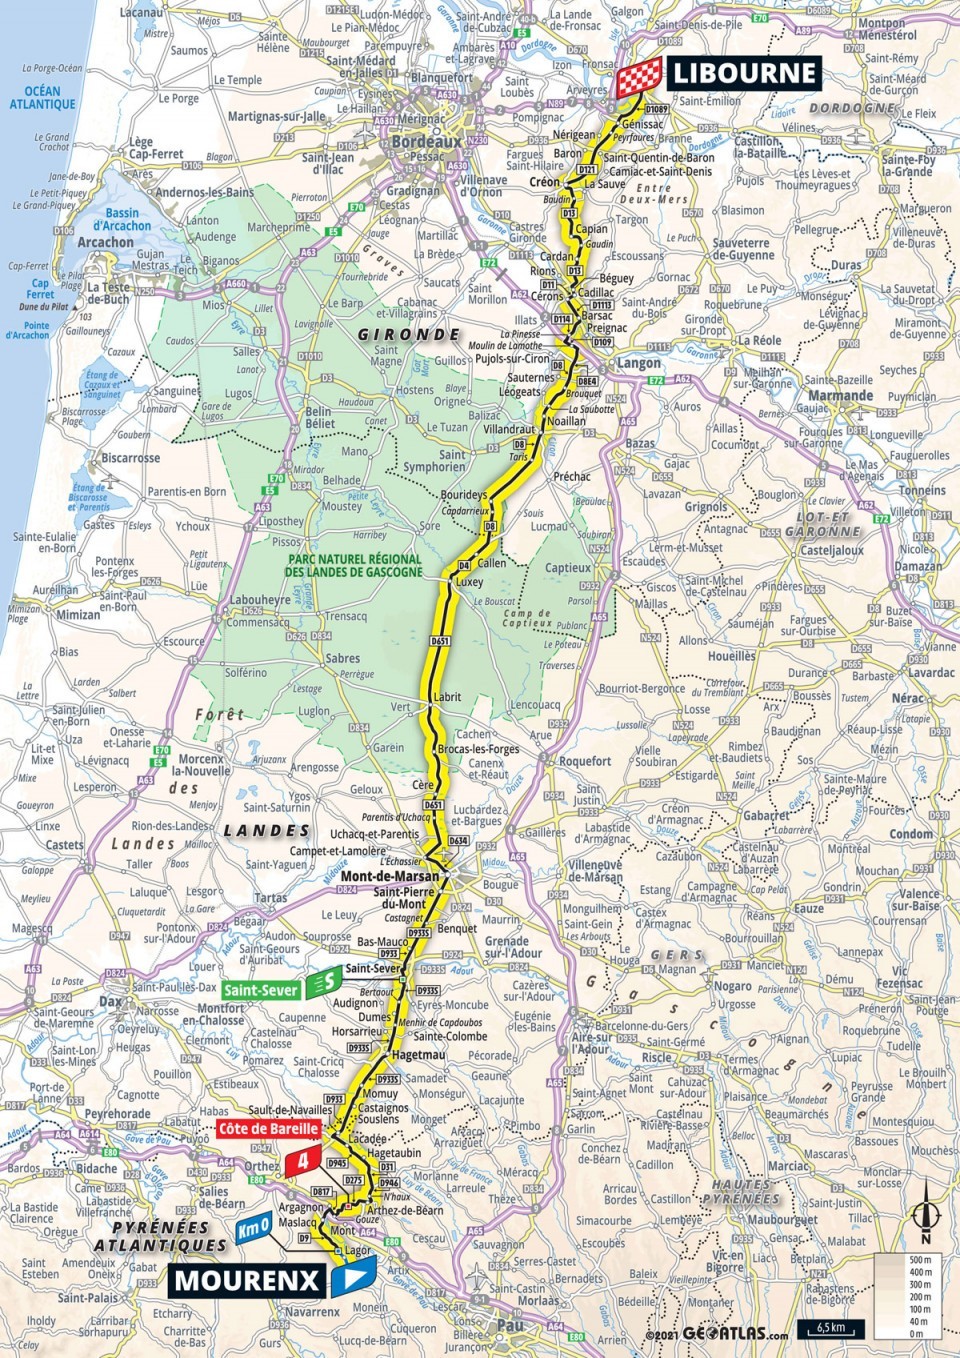 19. etapa na Tour de France 2021 - mapa.